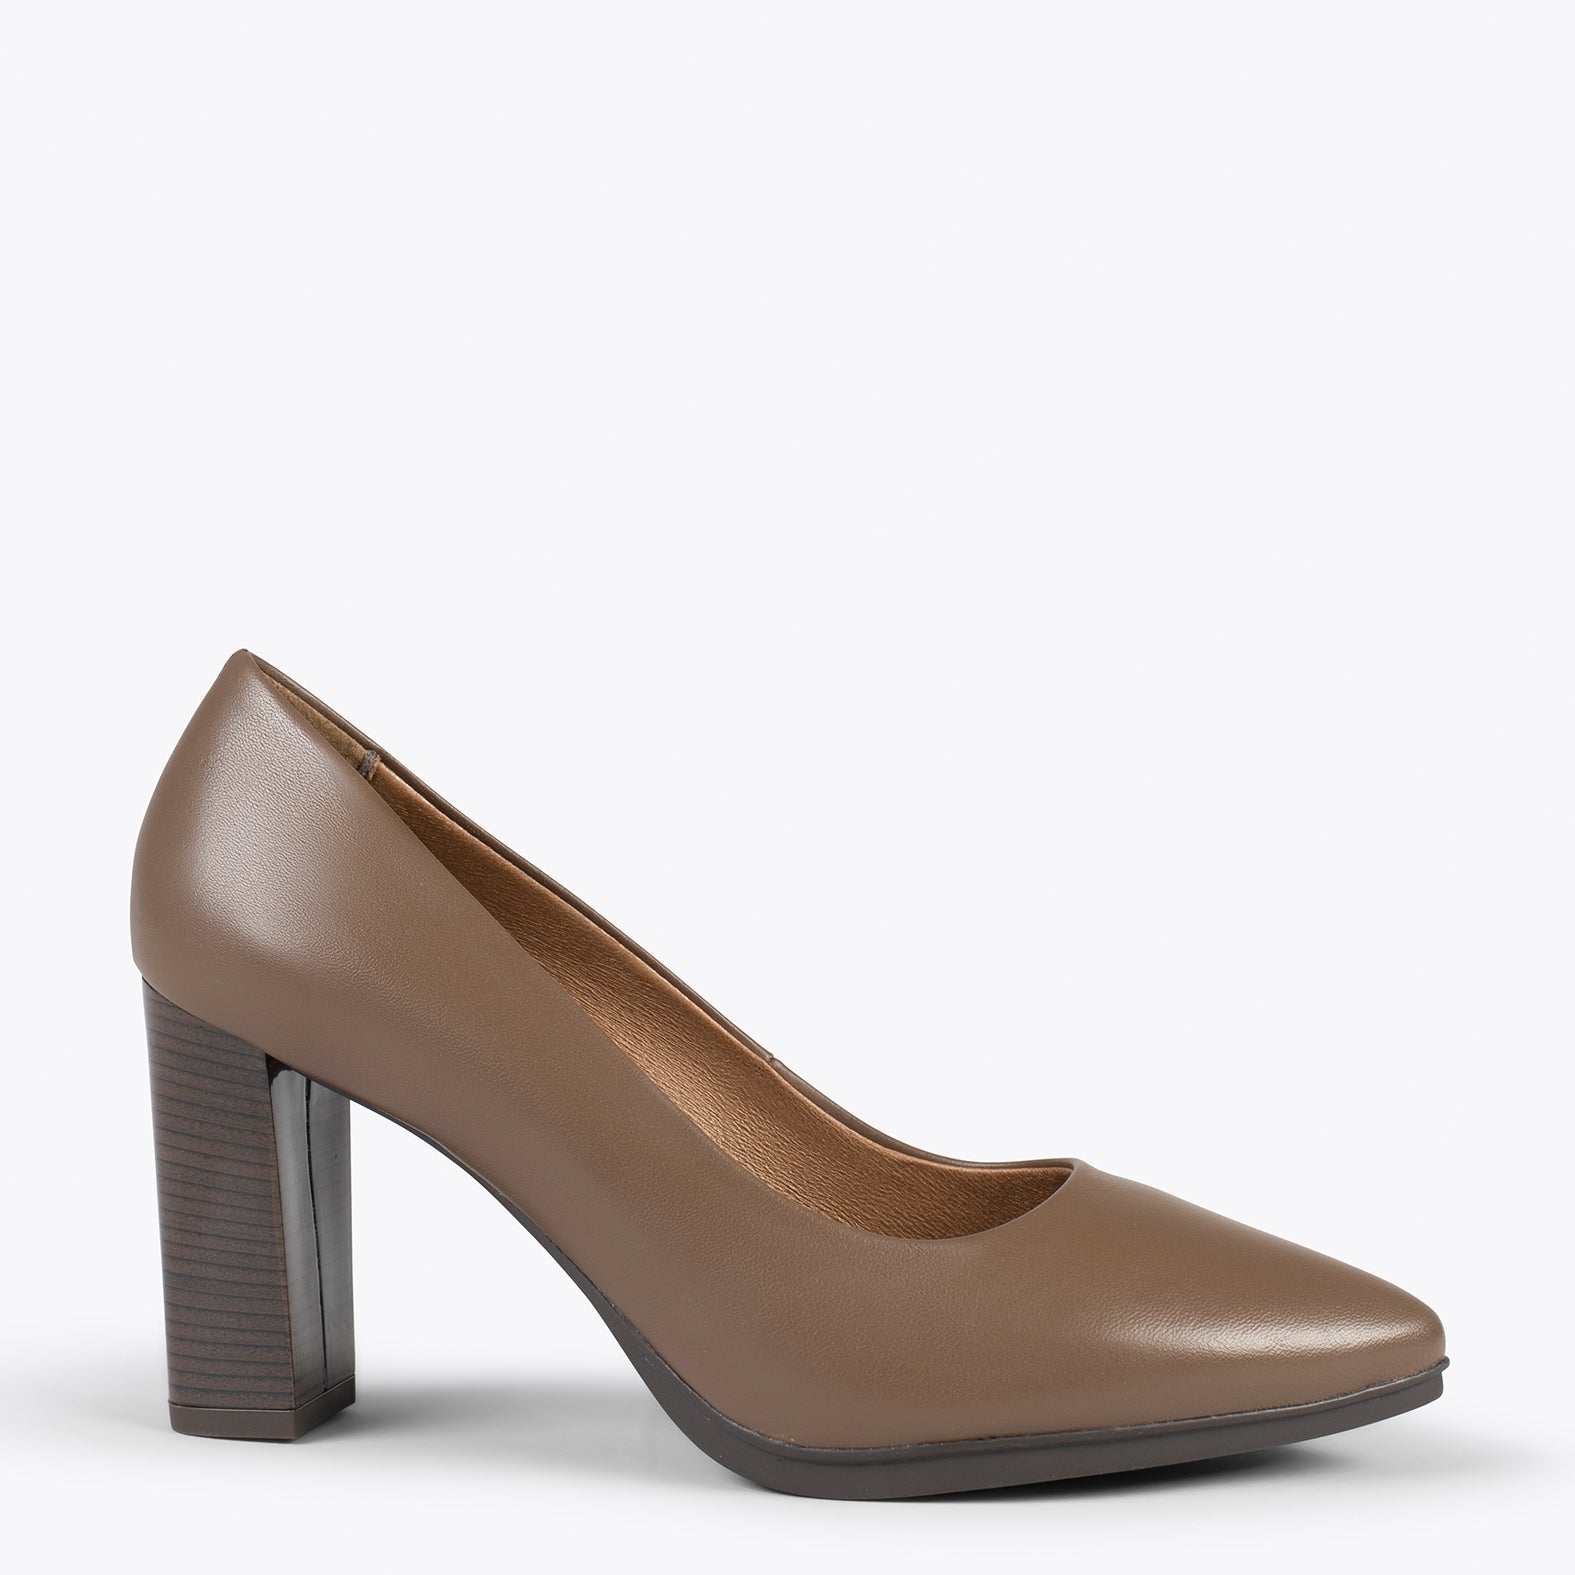 URBAN ÉCLAT – Chaussures à talon haut en cuir nappa MARRON